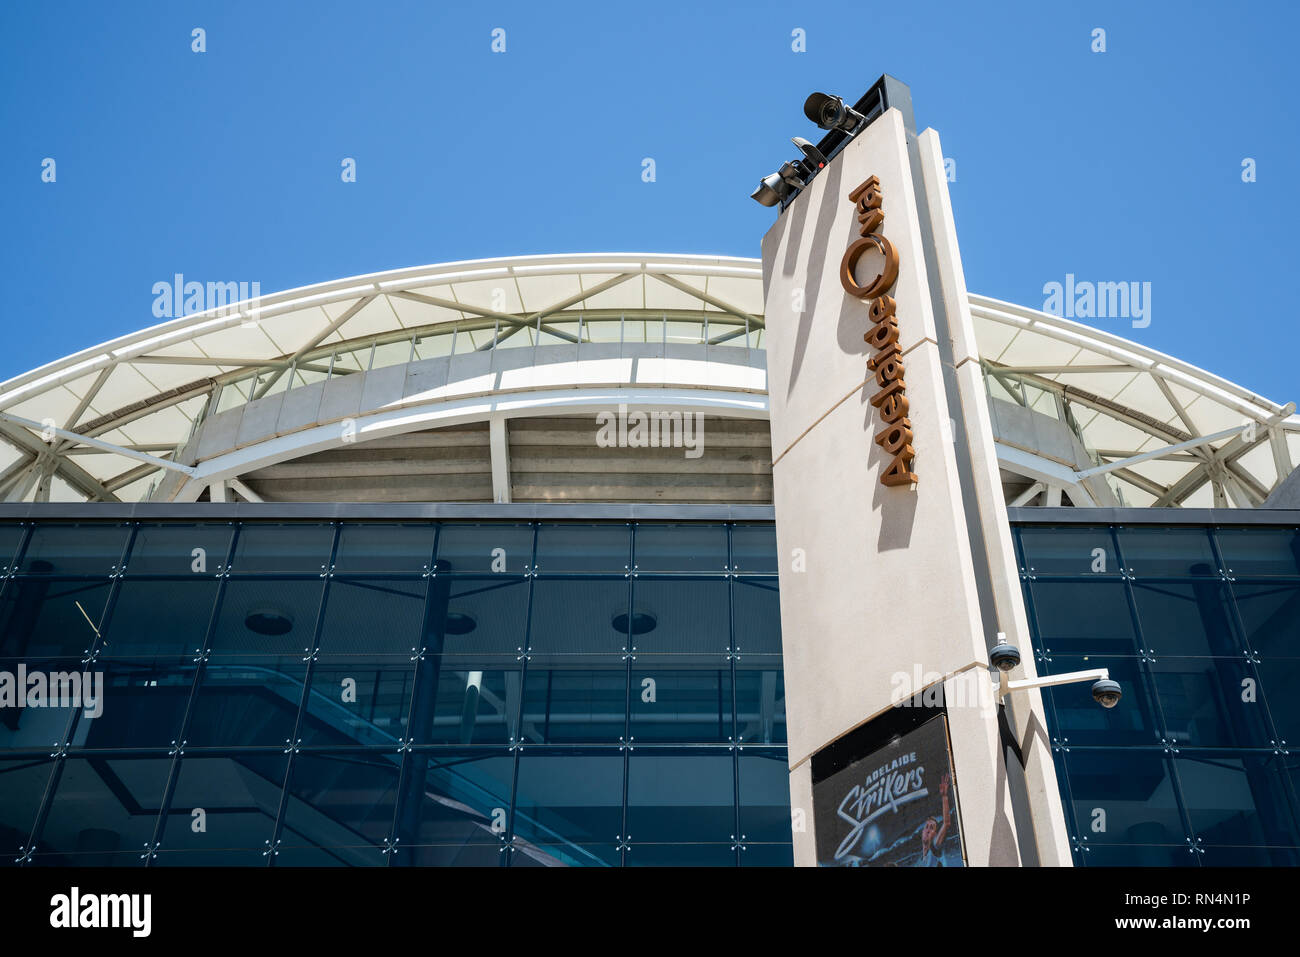 31 décembre 2018, Adelaide South Australia Adelaide Oval : terrain de sport stadium vue de l'avant avec logo et inscription close-up en Australie Adelaide SA Banque D'Images